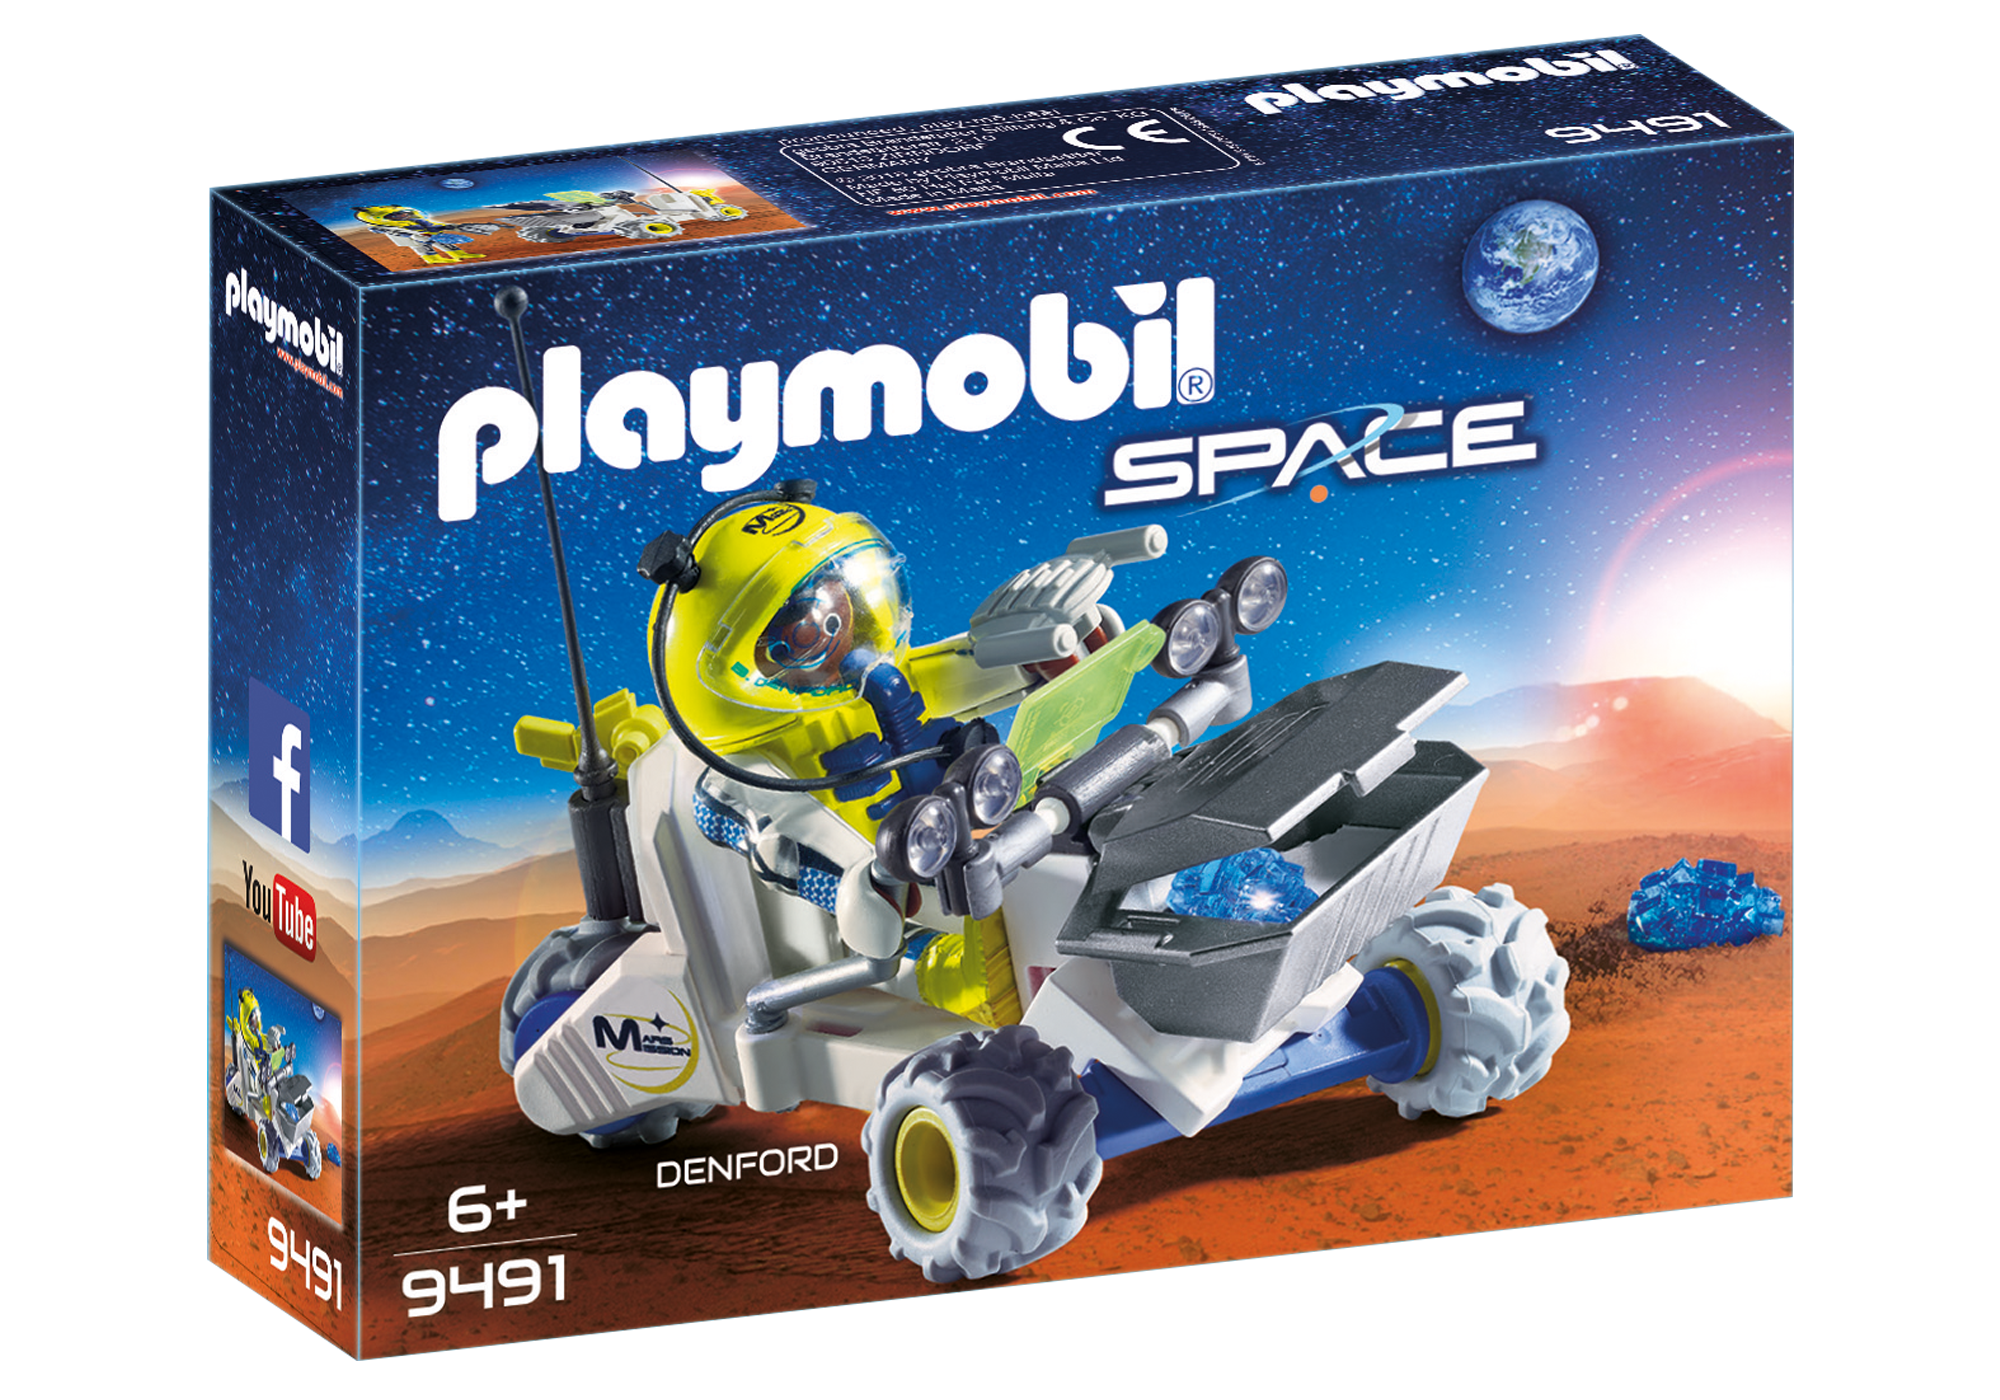 Playmobil Space 2018 9491_product_box_front?locale=de-DE,de,*&$pdp_product_main_xl$&strip=true